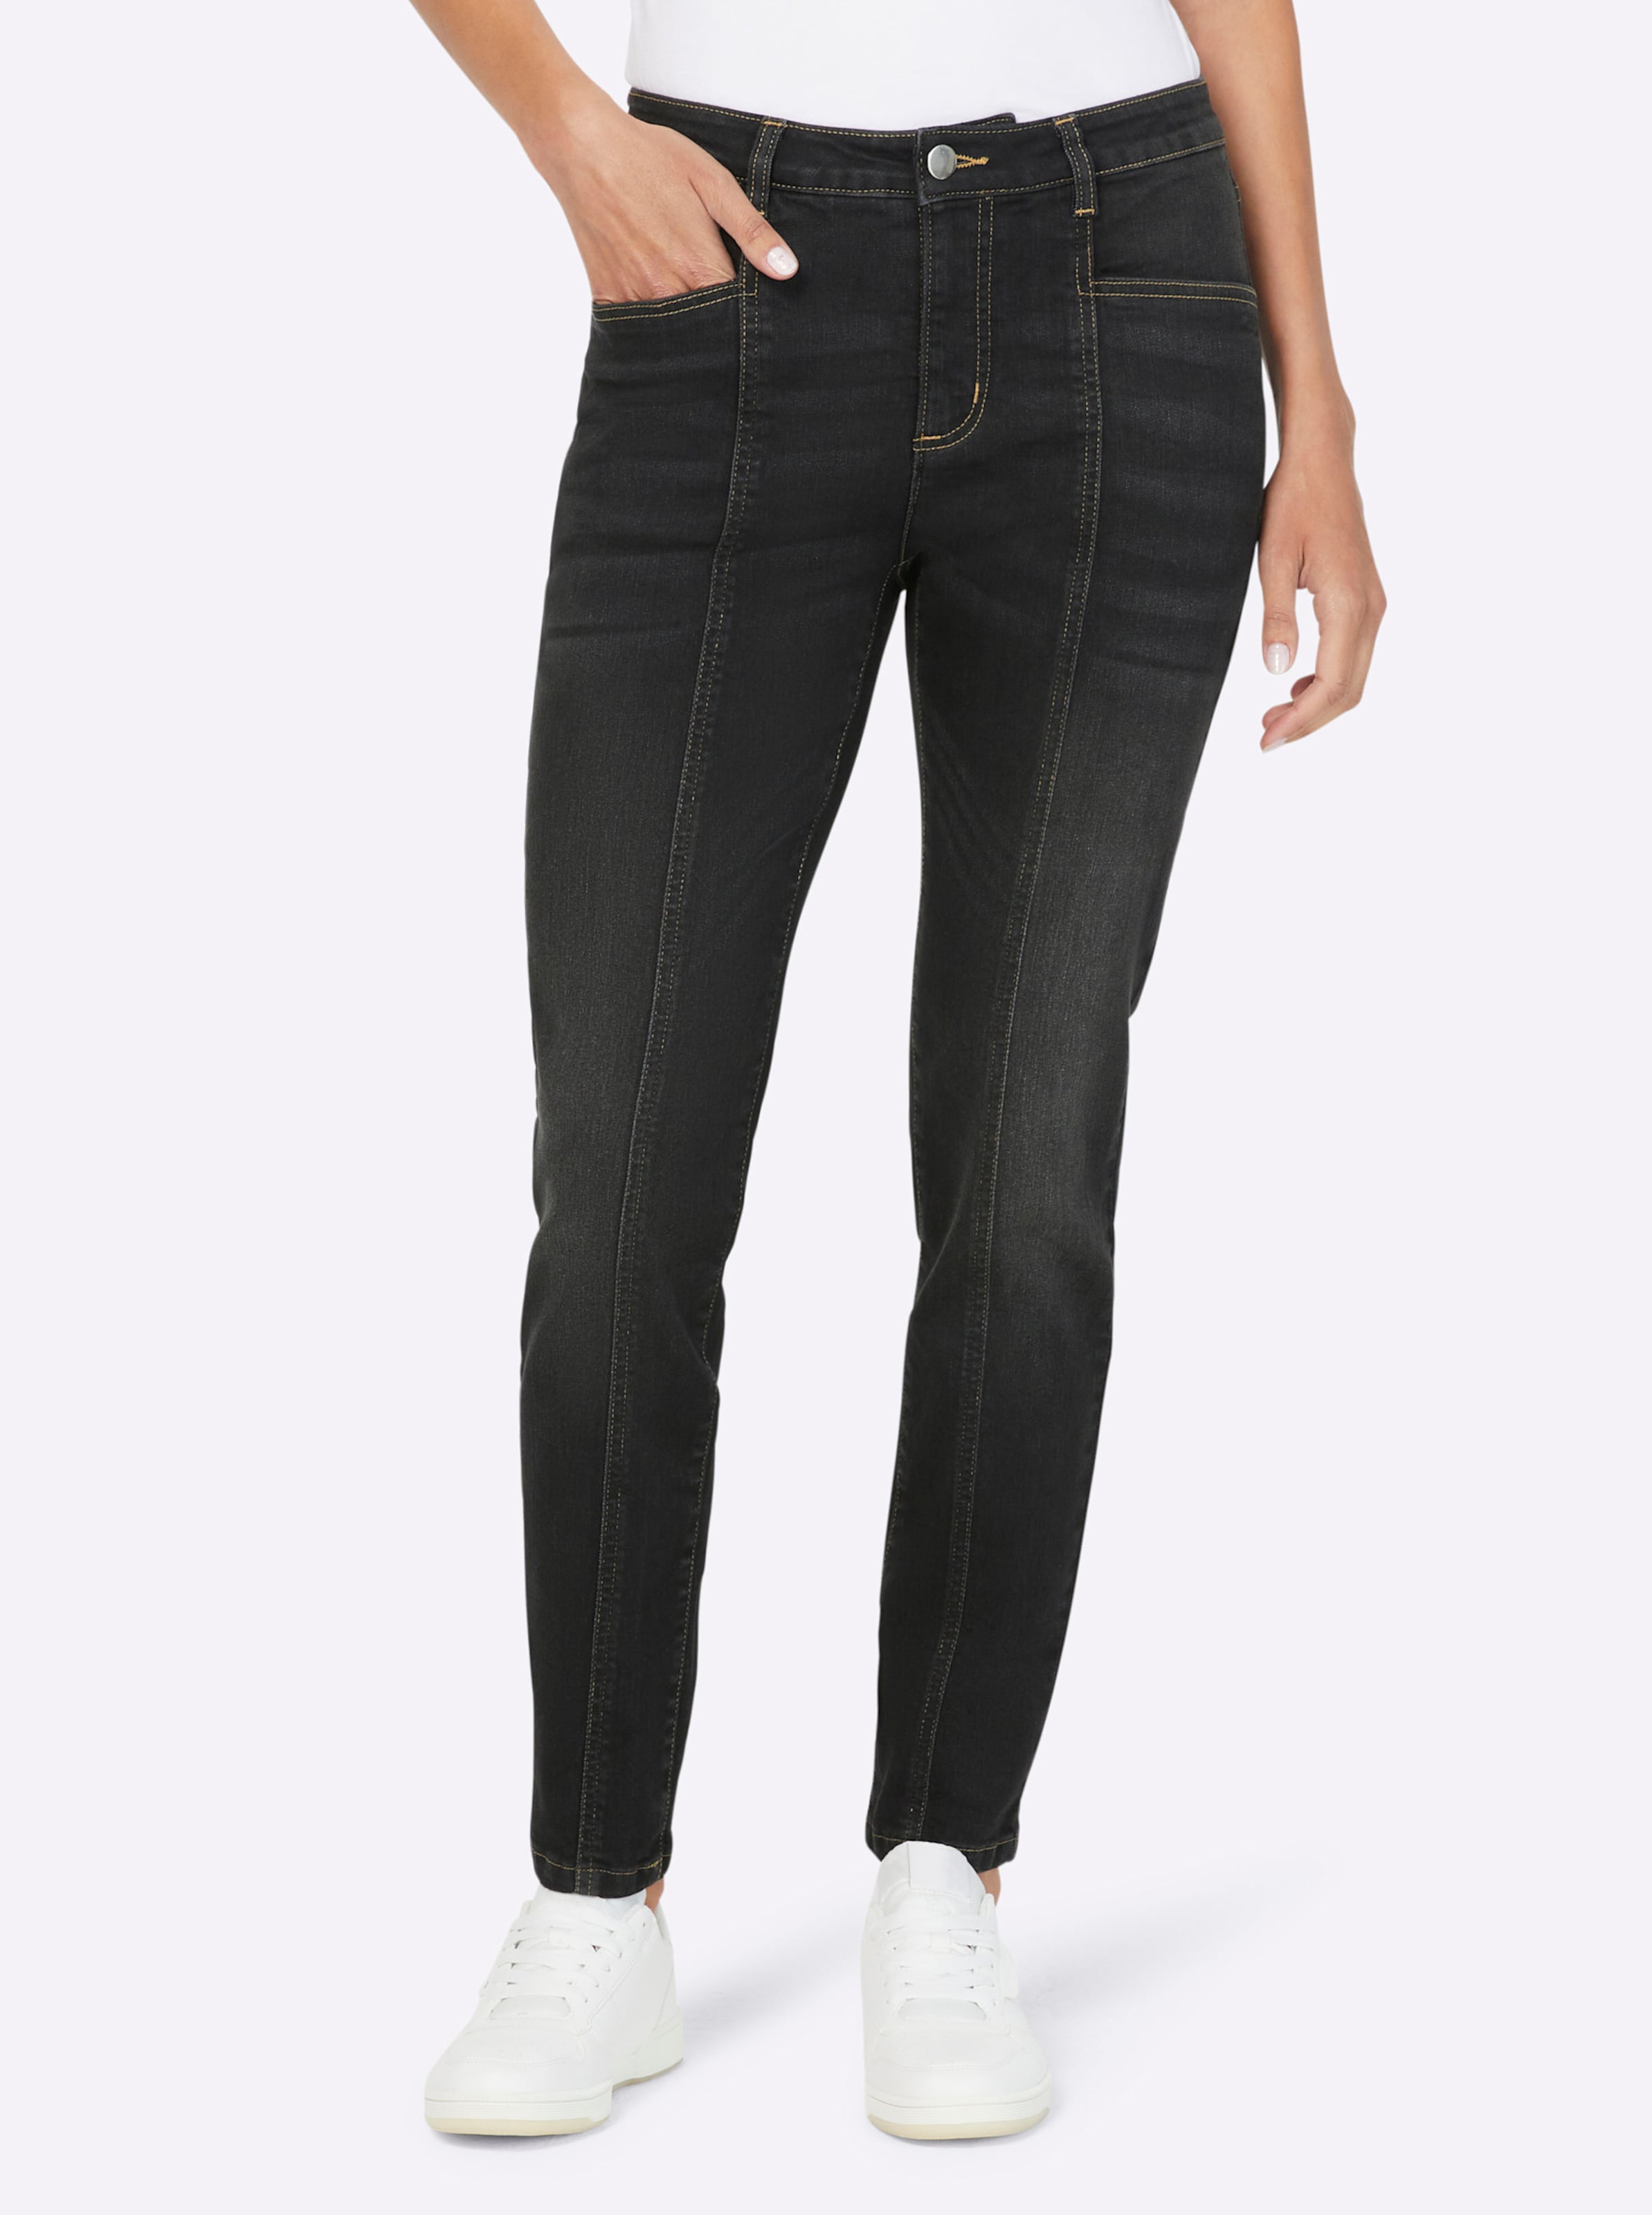 Witt Damen Jeans, black denim